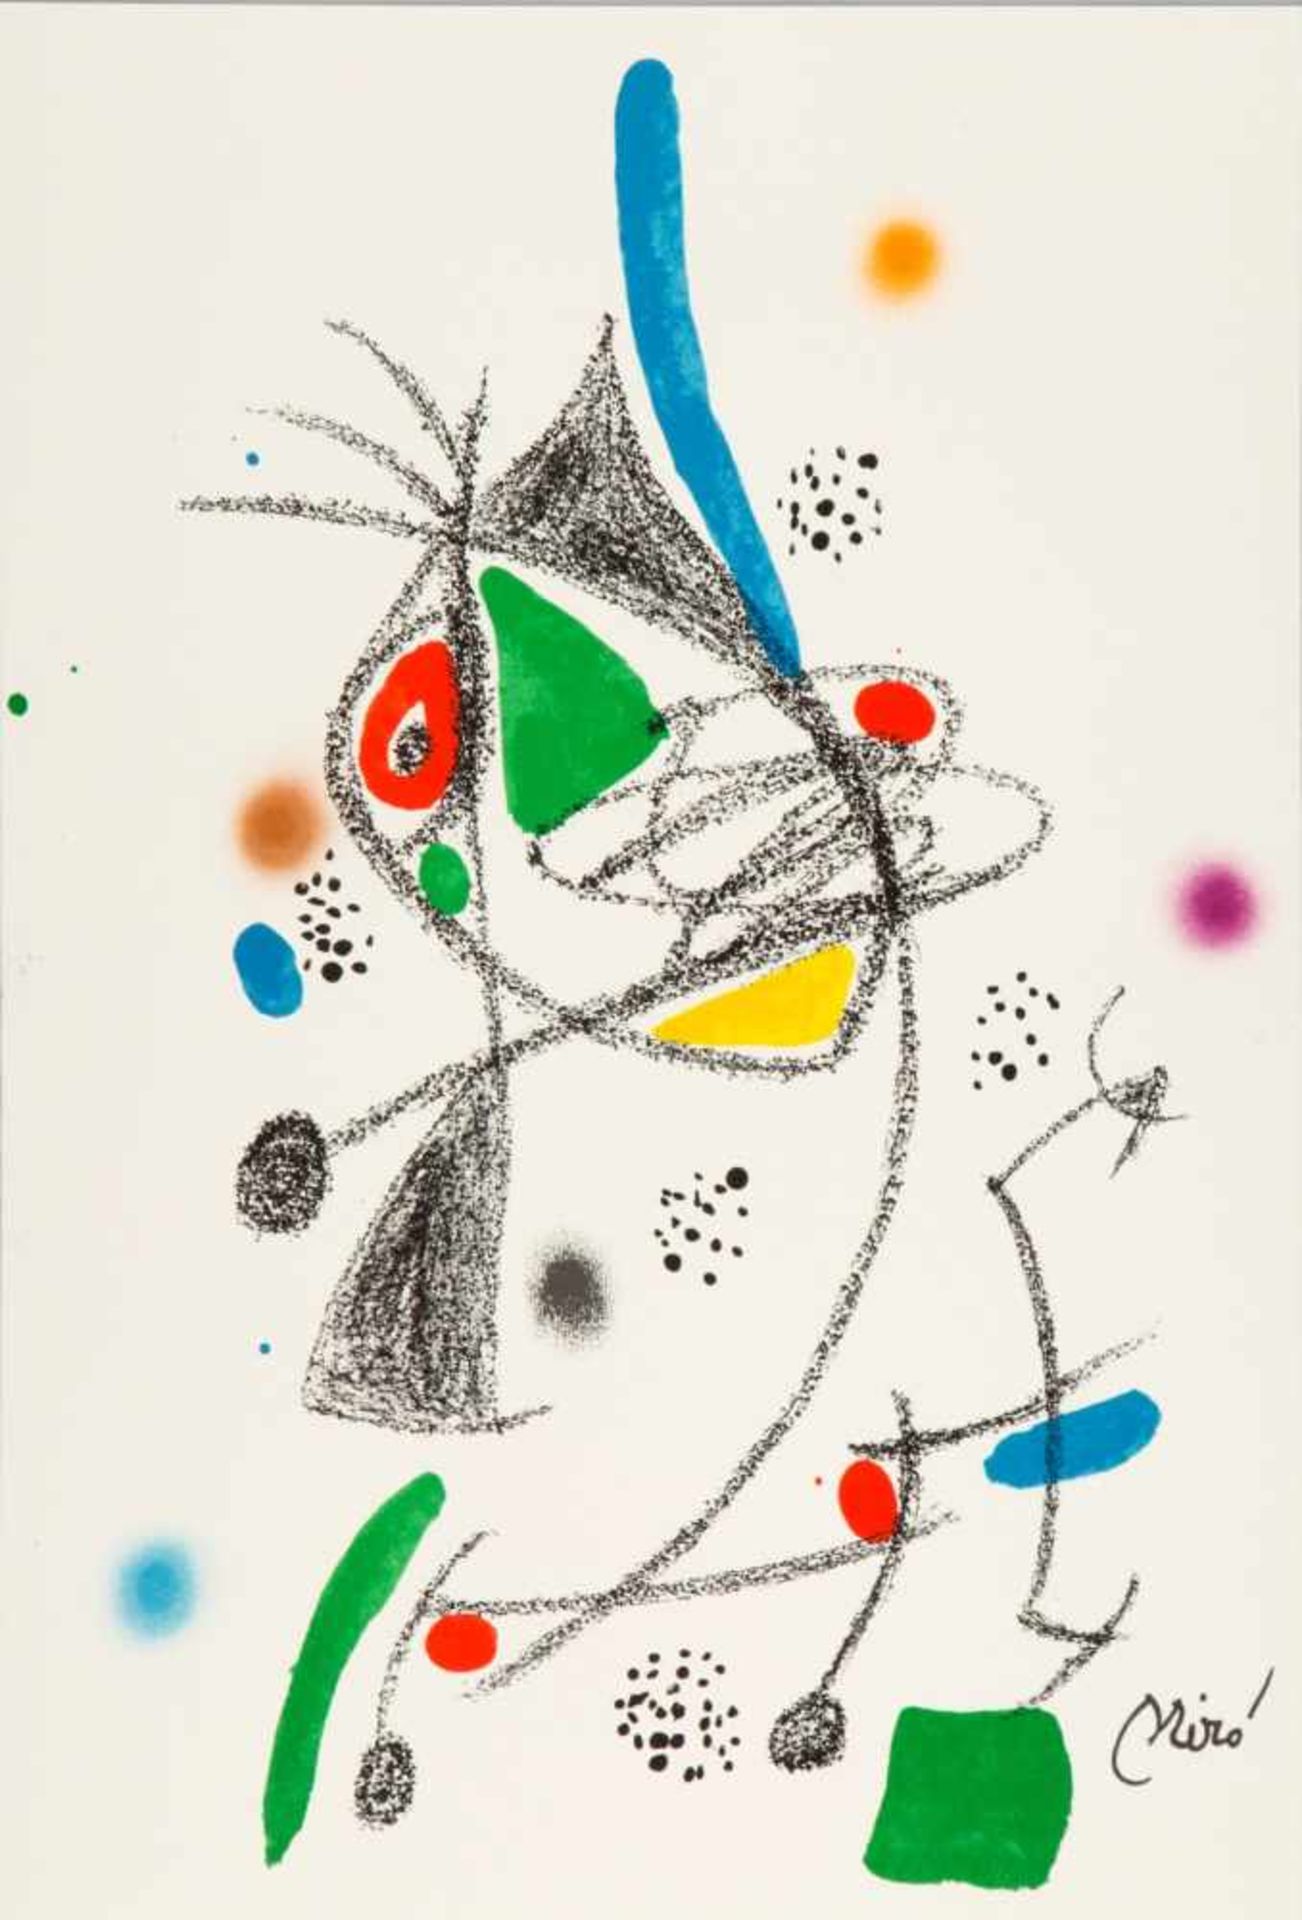 Joan Miro - Maravillas con Variaciones Acrósticas IV, 1975